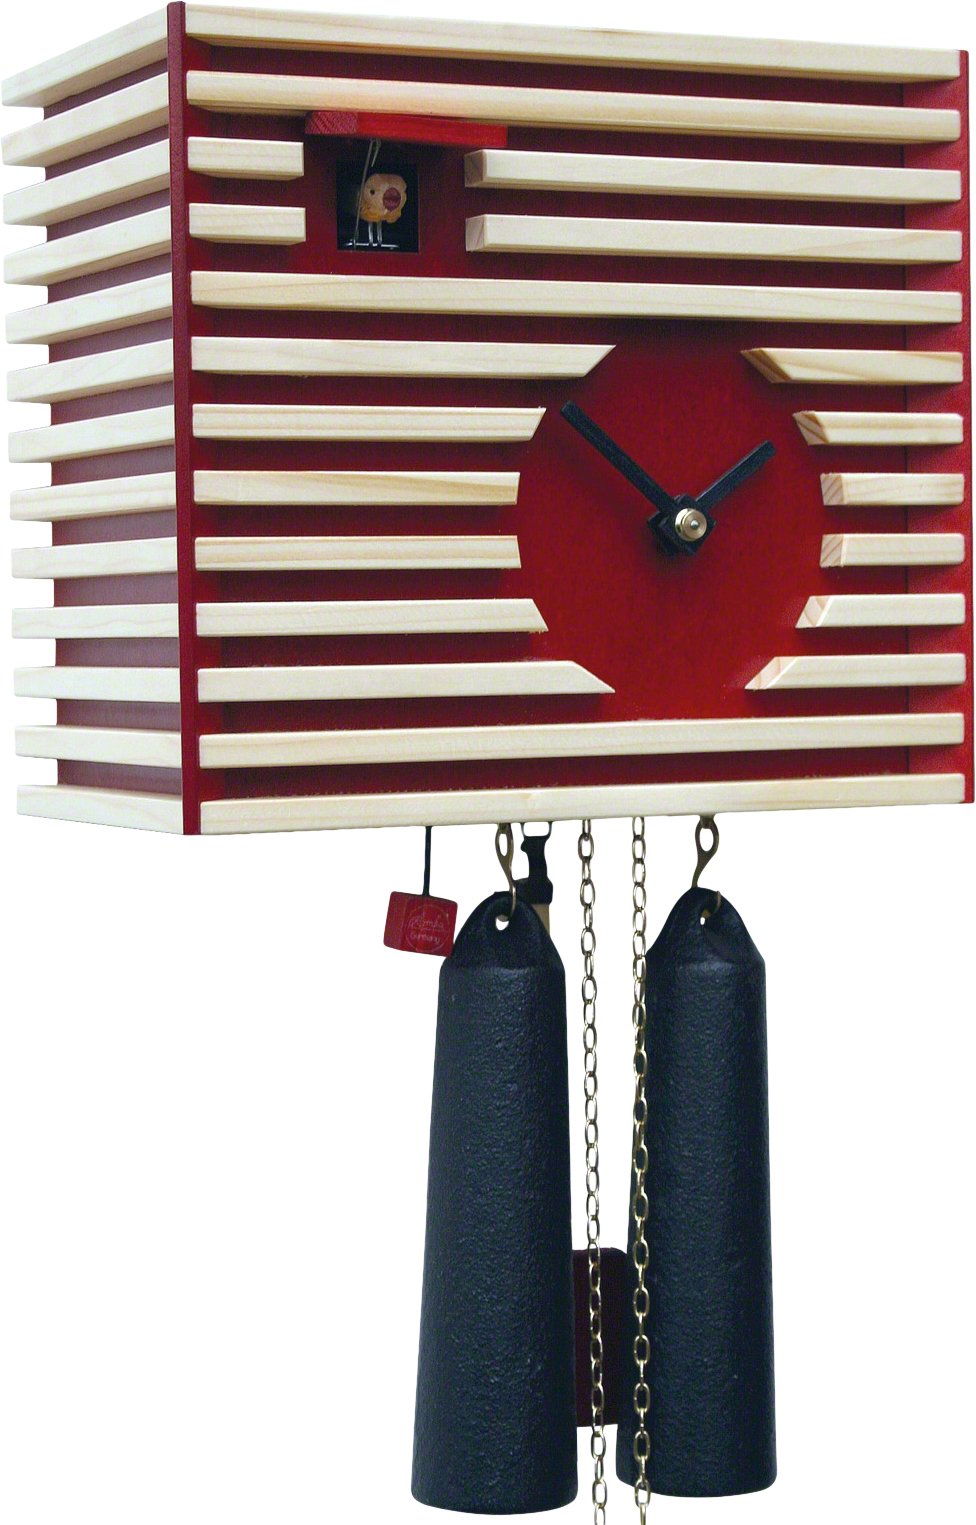 Moderne Kuckucksuhr 8-Tages-Uhrwerk  20cm von Rombach & Haas